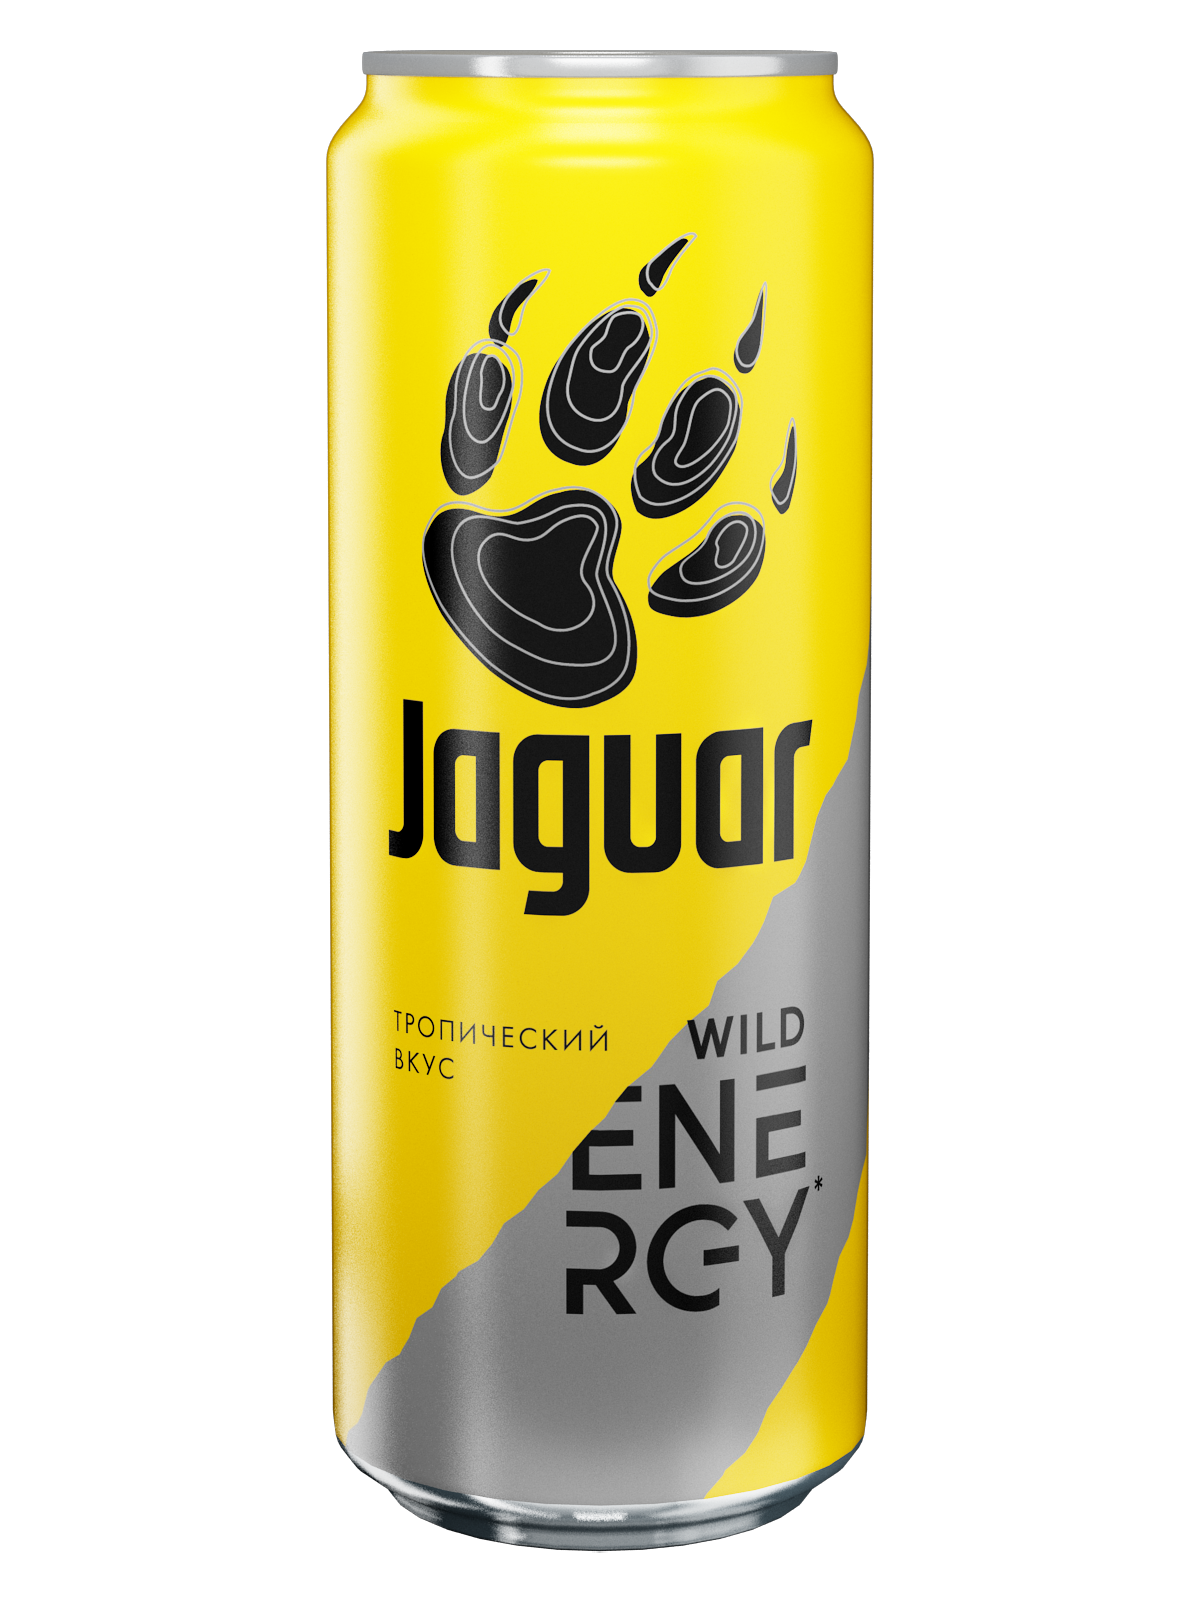 Энергетический напиток Jaguar Wild 0.5 л. Ягуар Энергетик безалкогольный желтый.